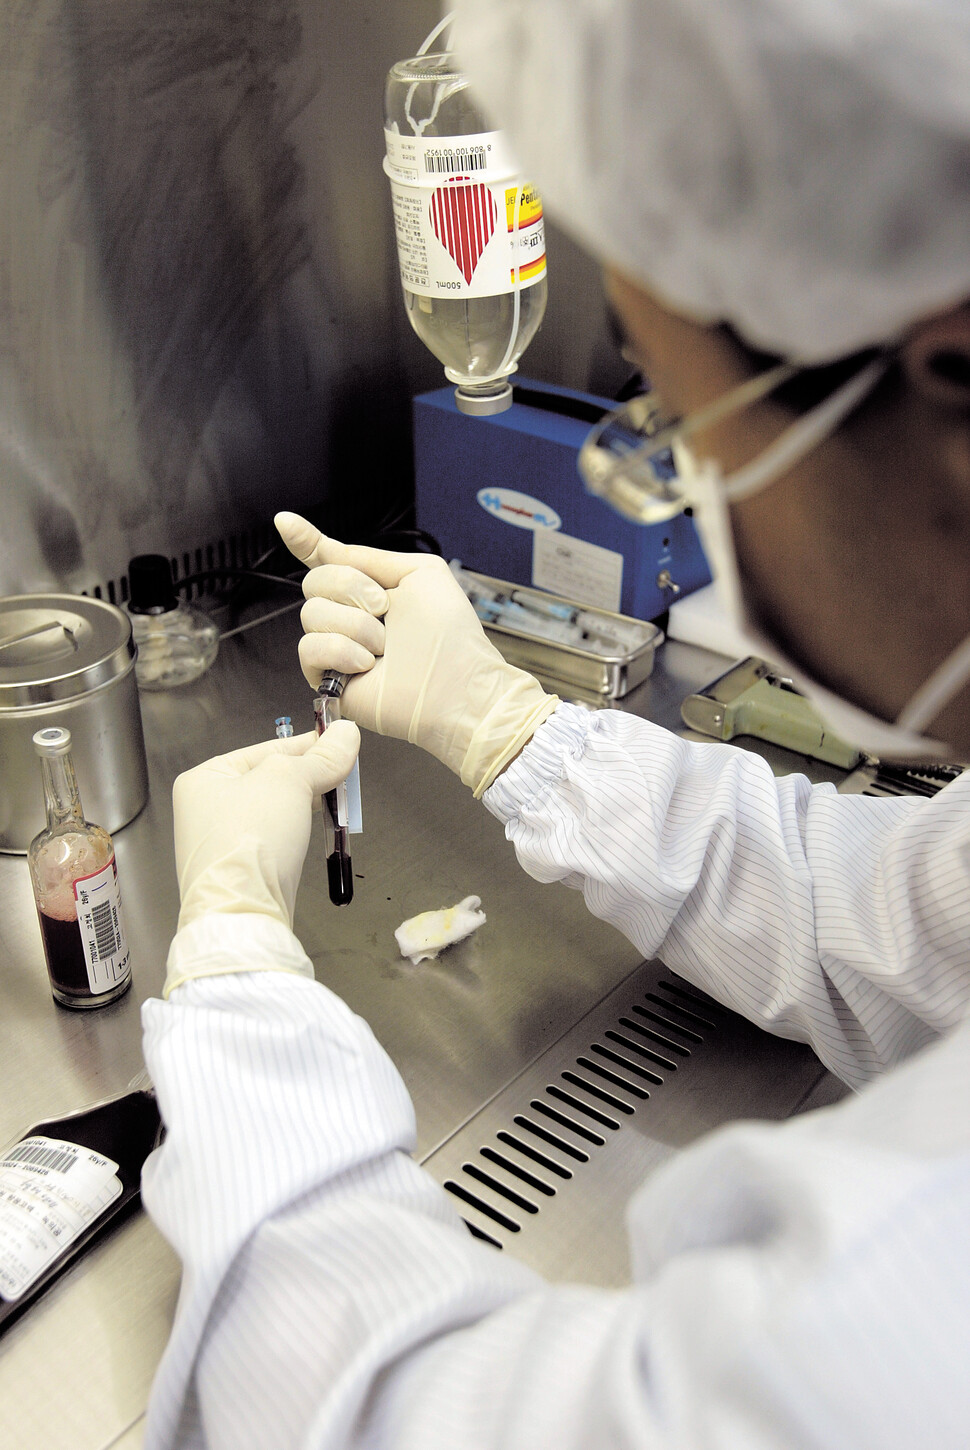 서울 한 종합병원의 의료진이 수거한 제대혈의 보관적합성 검사를 하고 있다. 박승화 기자